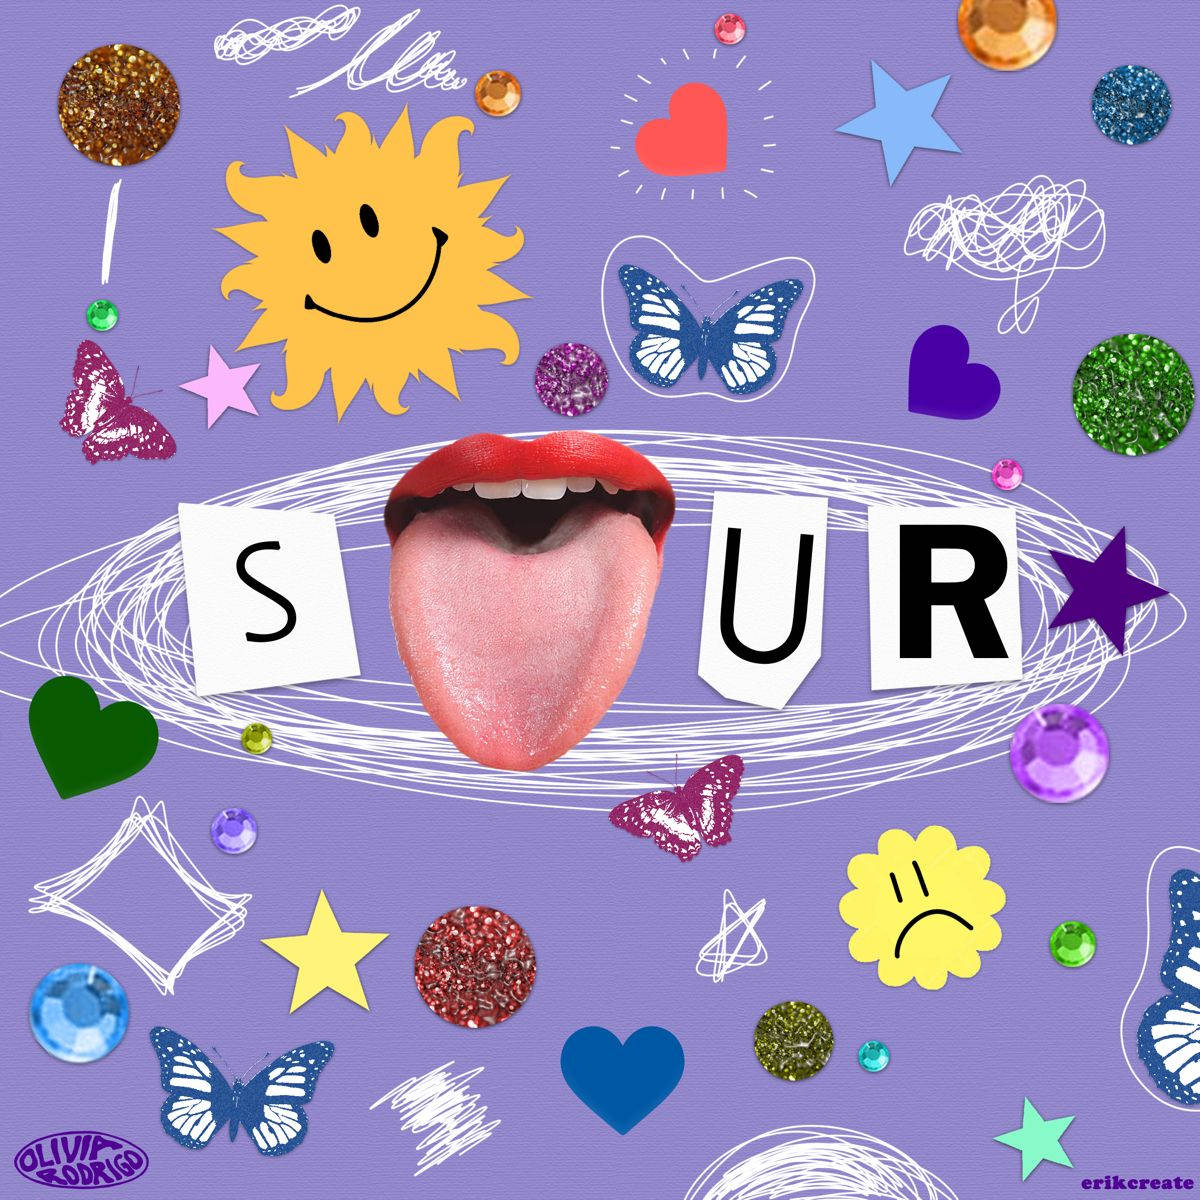 Olivia Rodrigo's Sour Album Cover Wallpaper